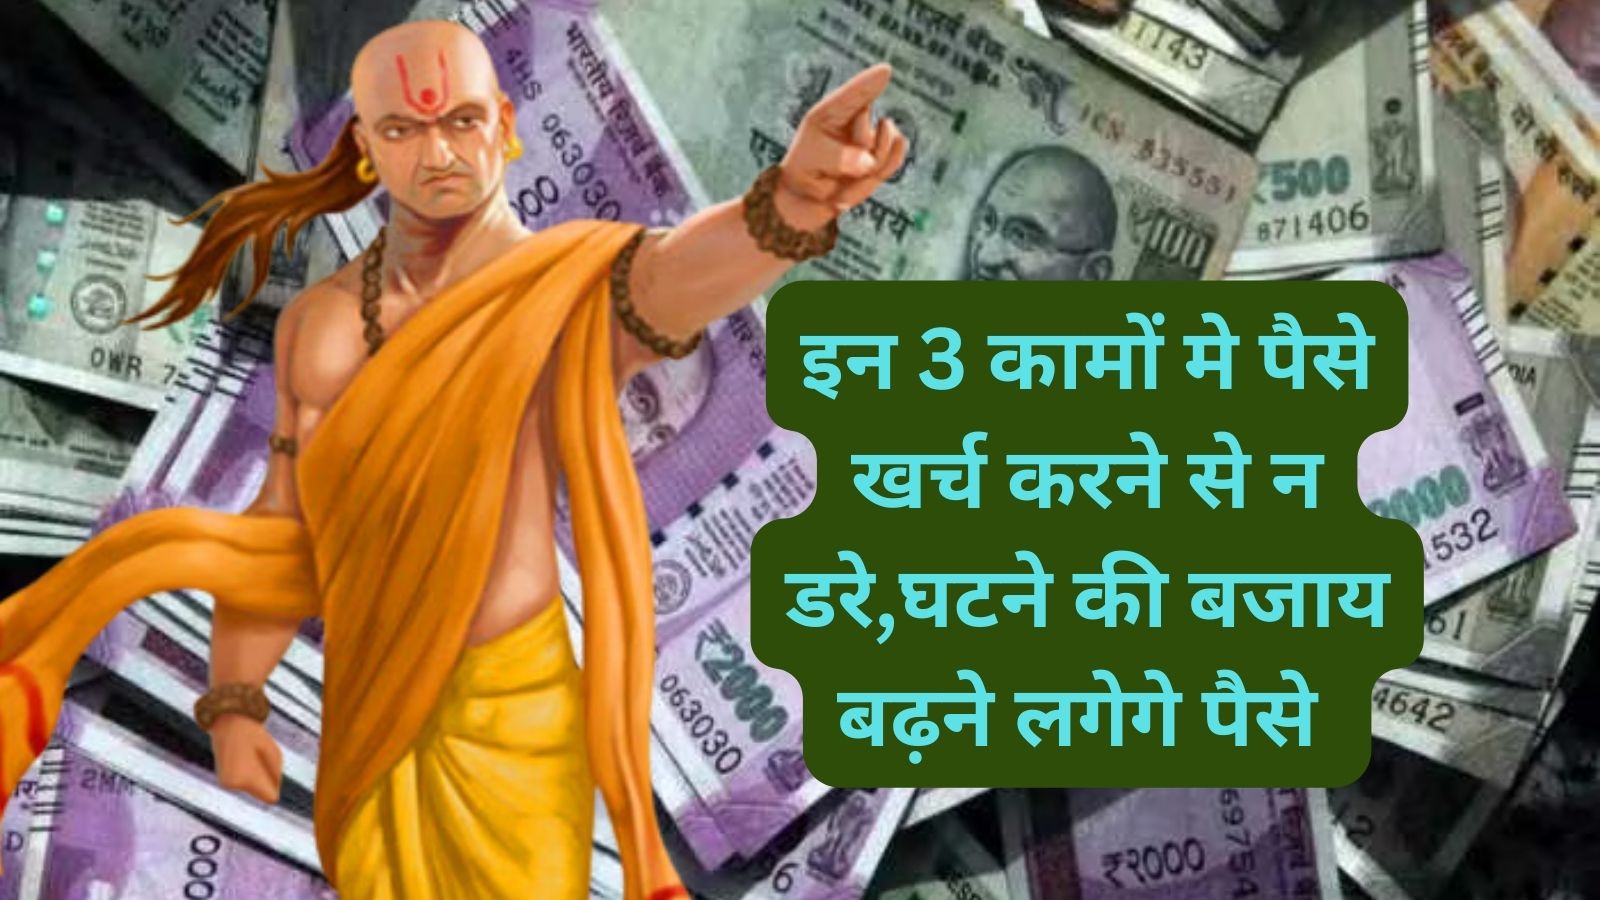 Chanakya Niti:इन 3 कामों मे पैसे खर्च करने से न डरे,घटने की बजाय बढ़ने लगेगे पैसे